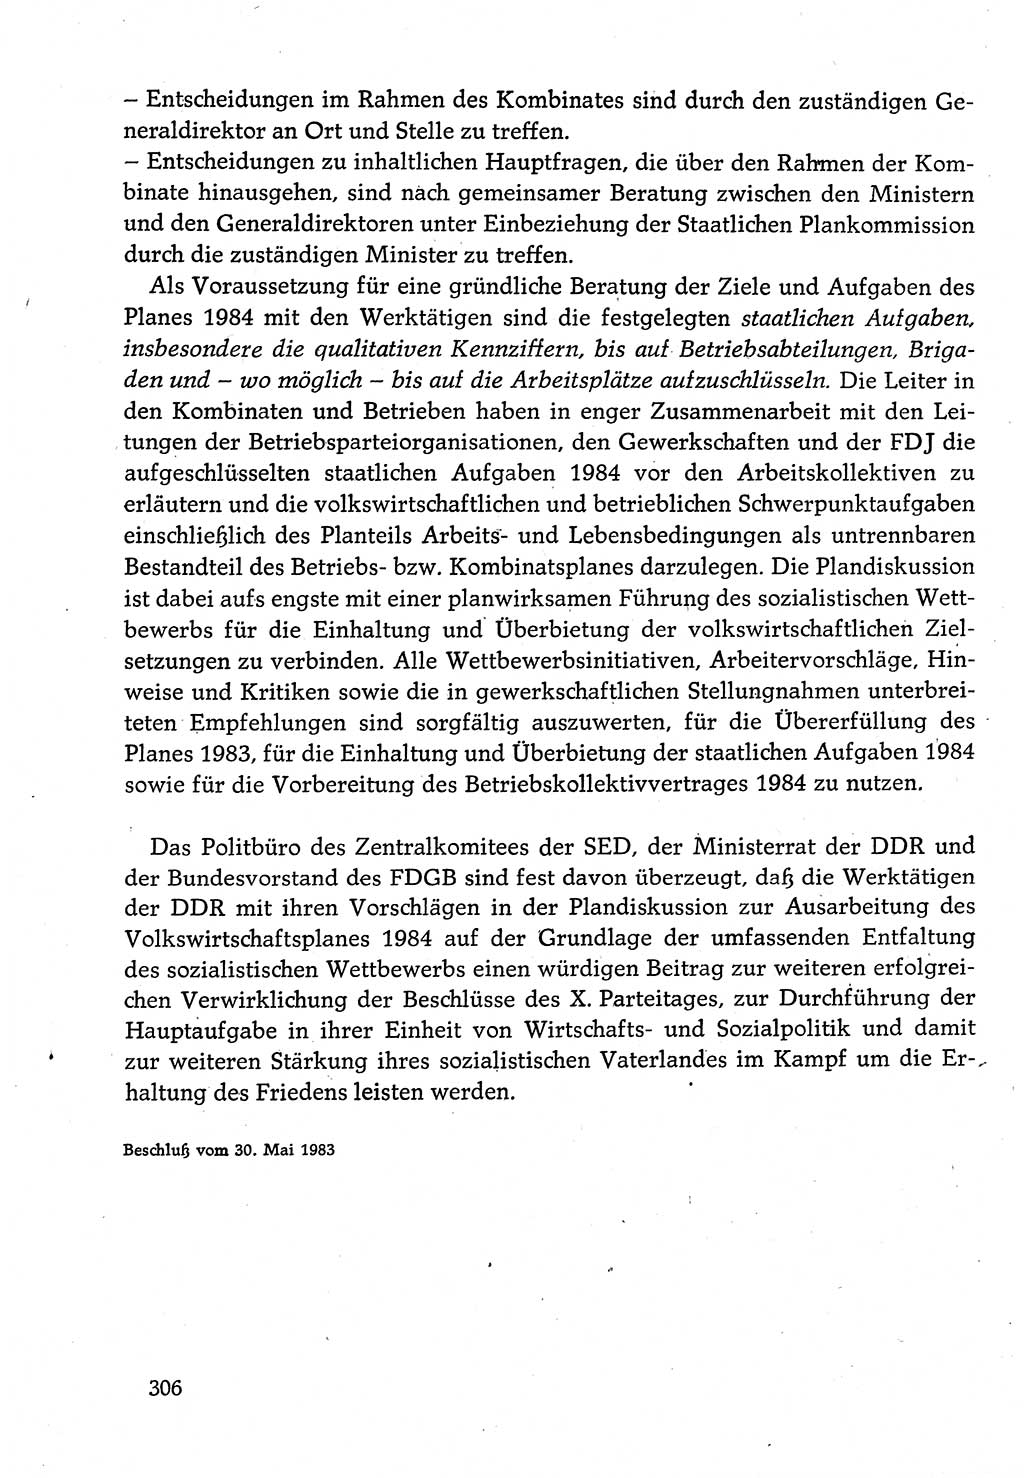 Dokumente der Sozialistischen Einheitspartei Deutschlands (SED) [Deutsche Demokratische Republik (DDR)] 1982-1983, Seite 306 (Dok. SED DDR 1982-1983, S. 306)